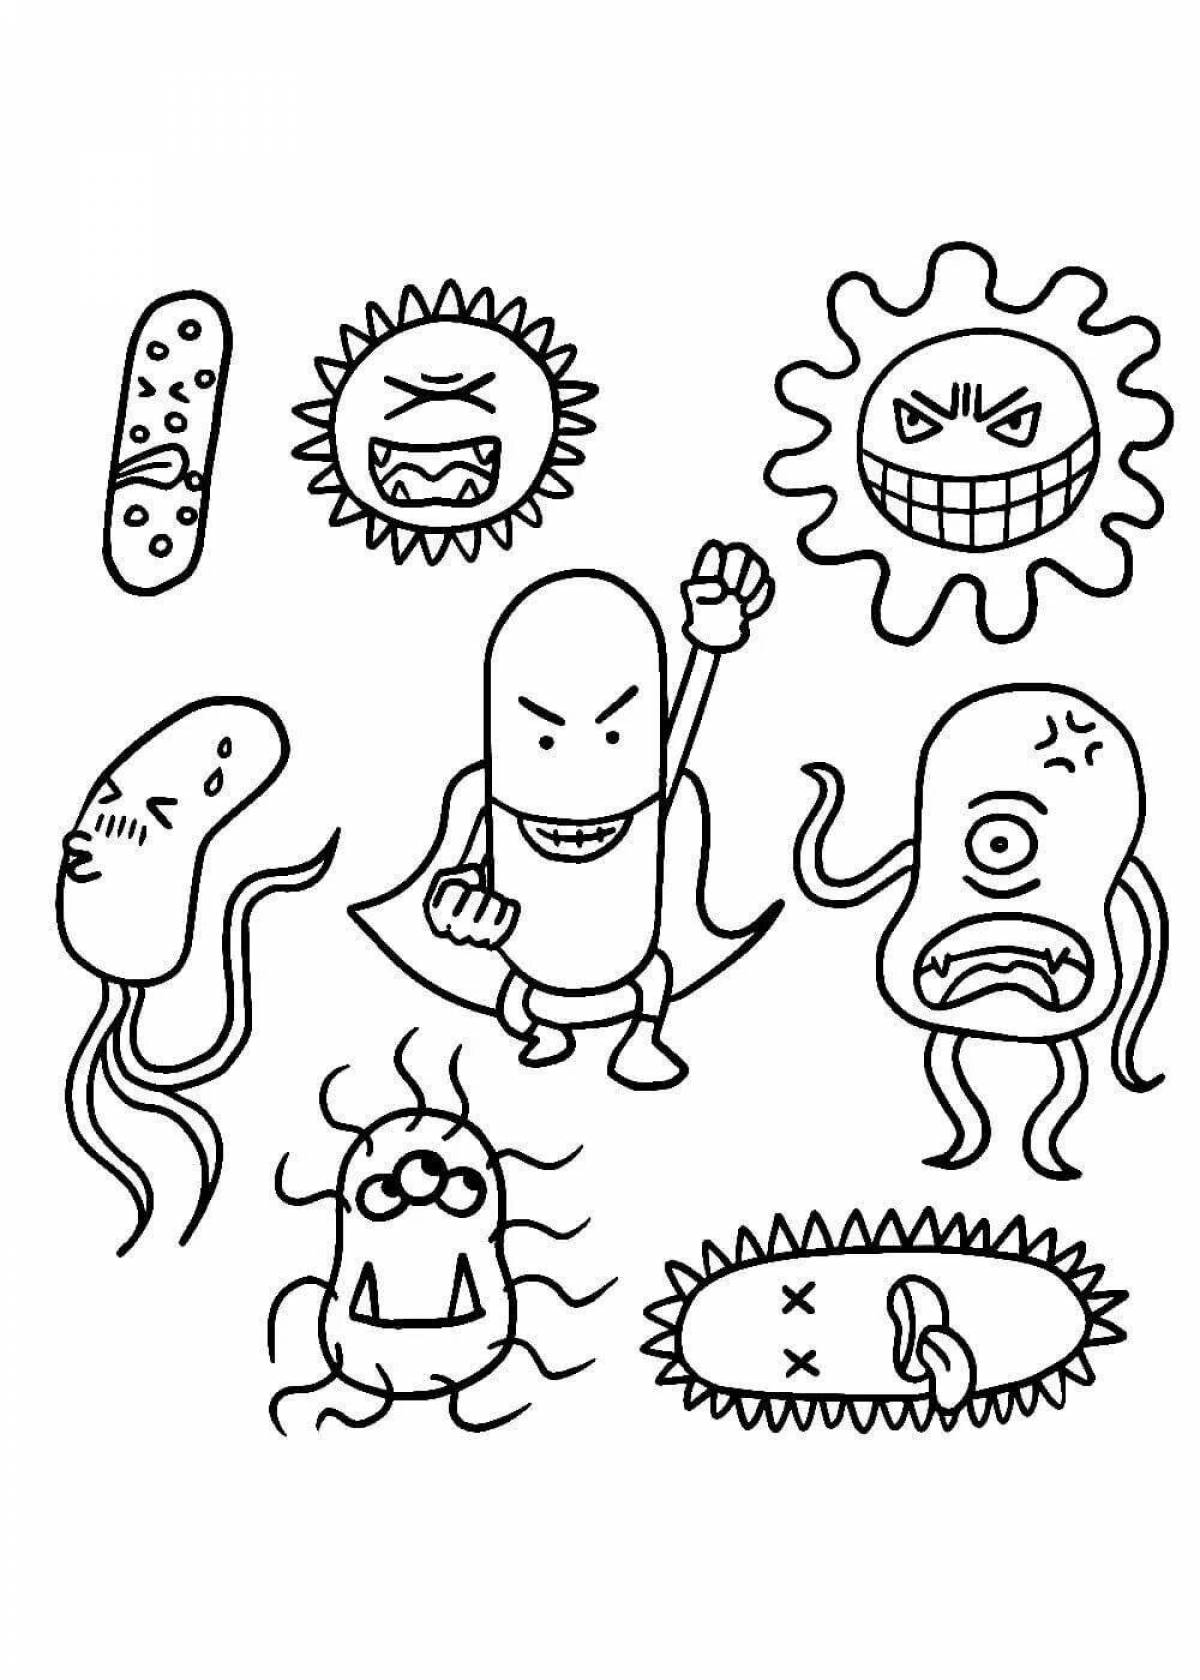 Игривая страница раскраски микробов для детей